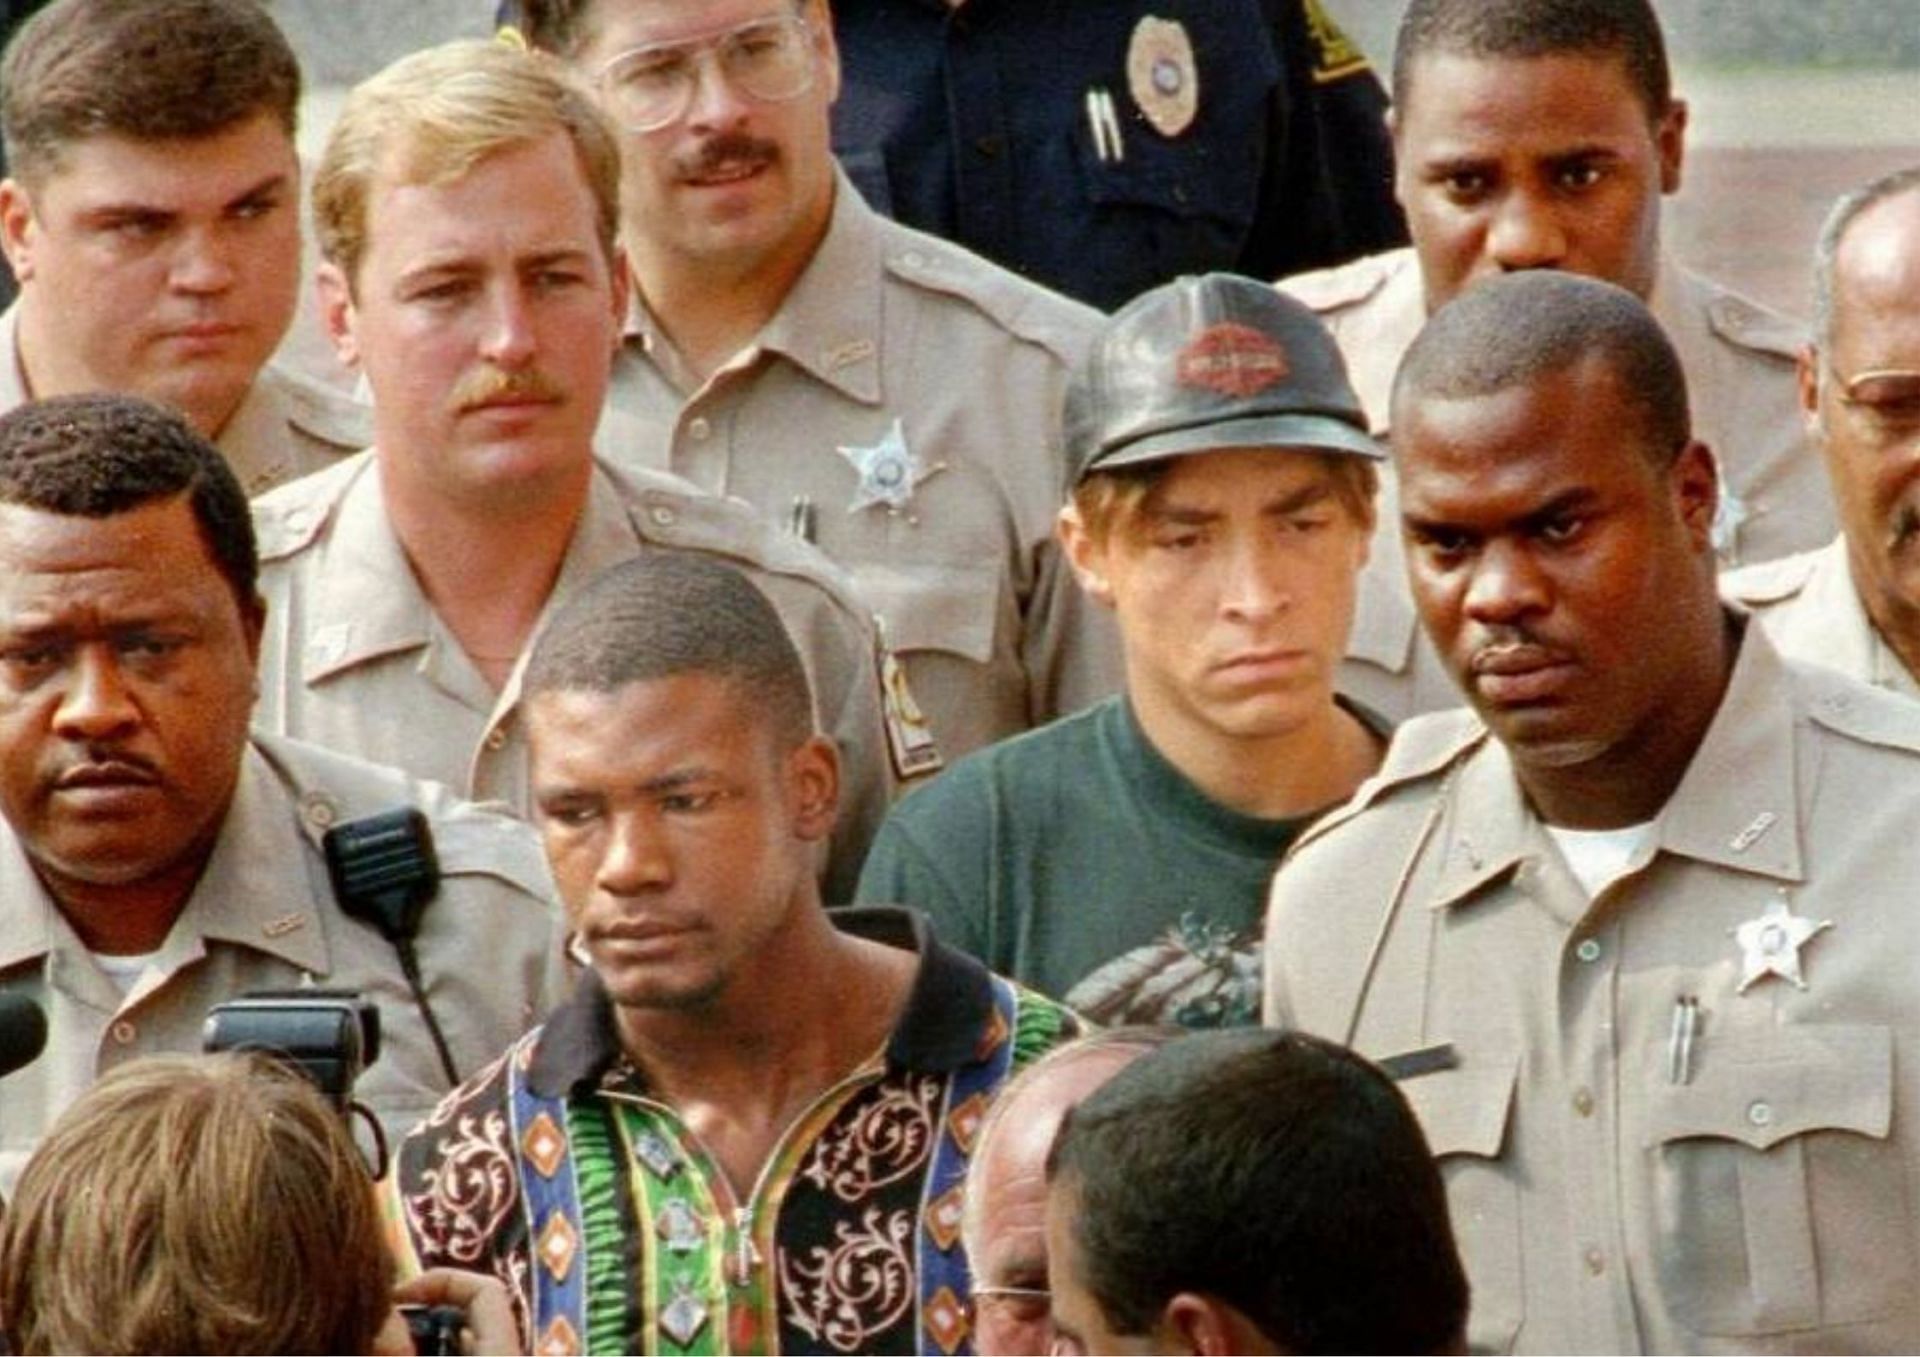 The convicted killers of James Jordan, Michael Jordan